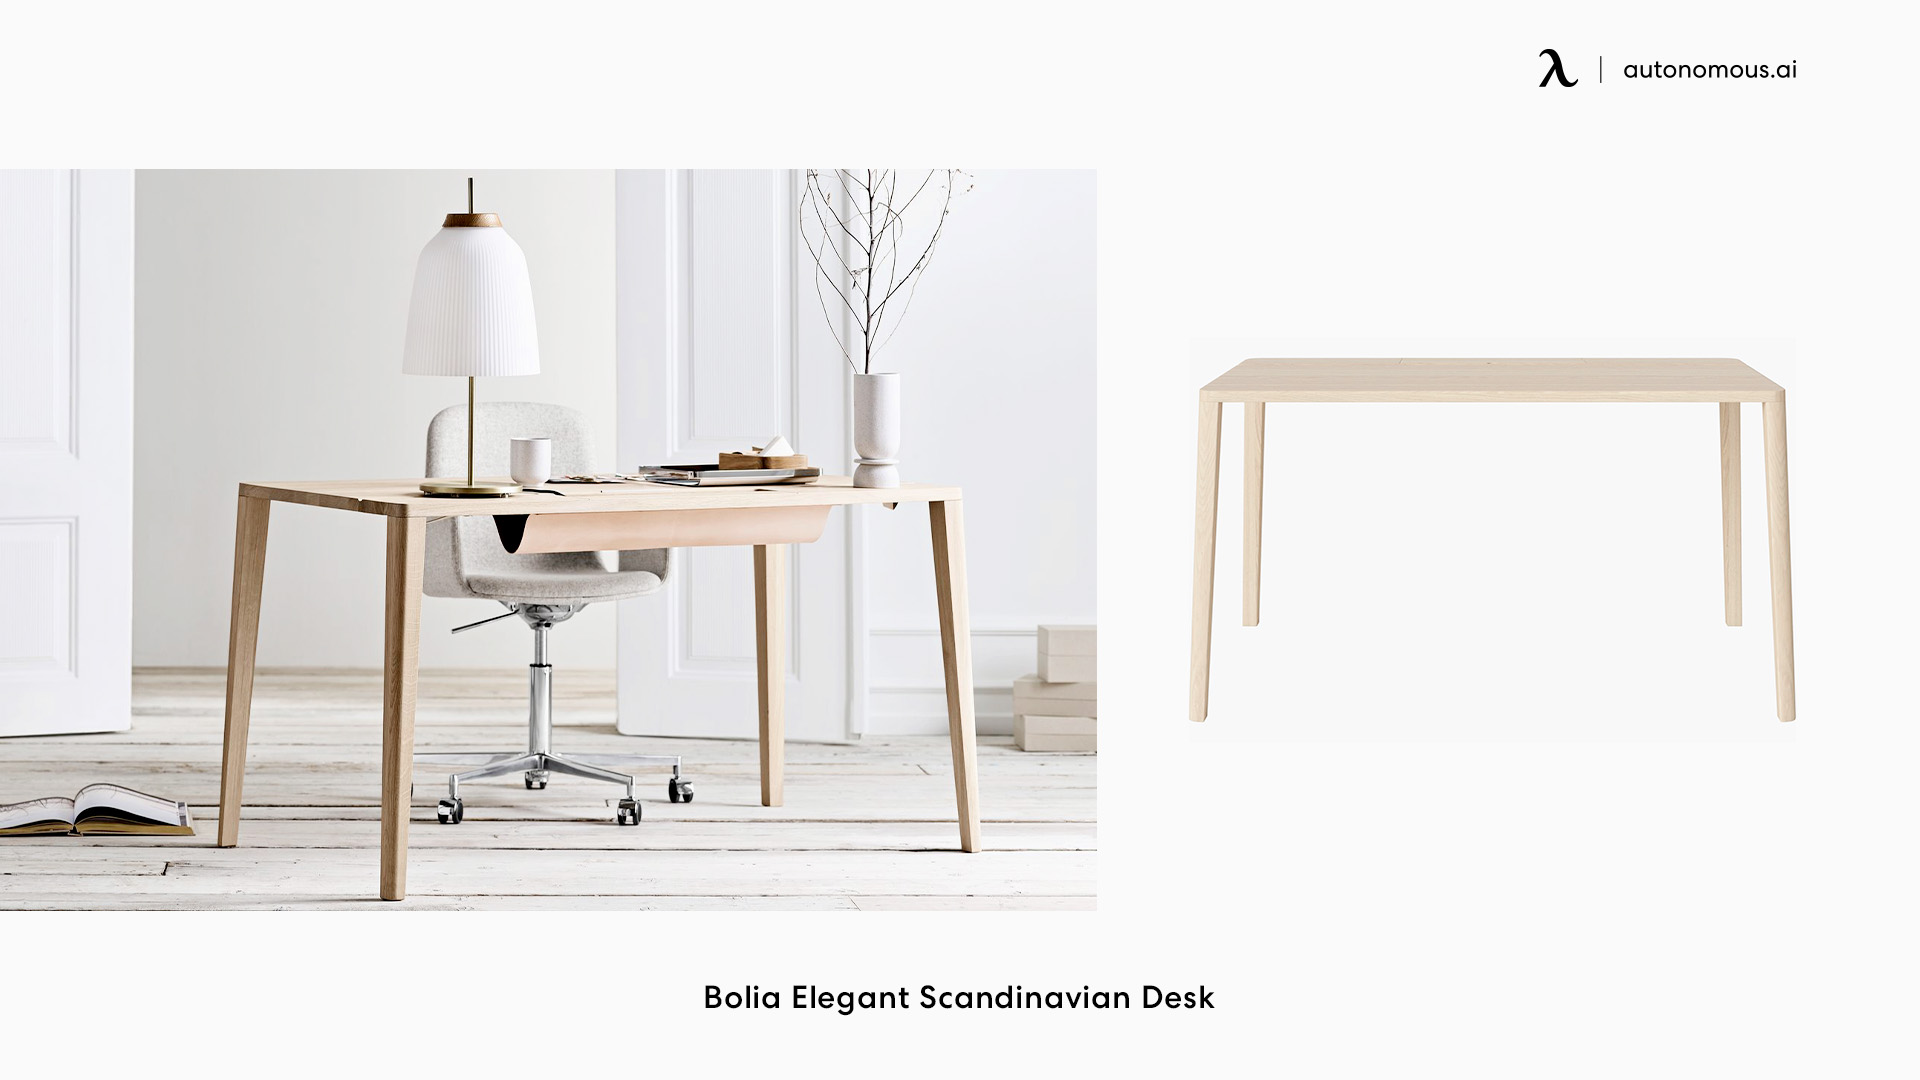 Bolia Elegant Scandinavian home office desk design